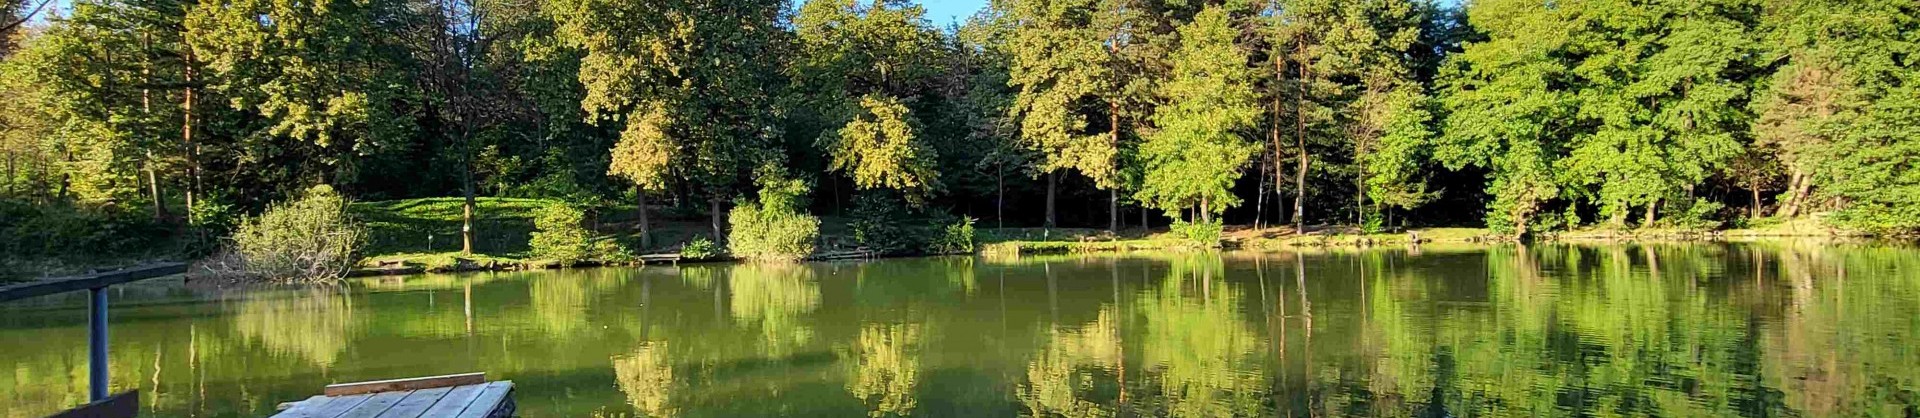 Jezero tajht novi kloster polzela jezera slovenije slovenska jezera moja jezera manca korelc 4 sl